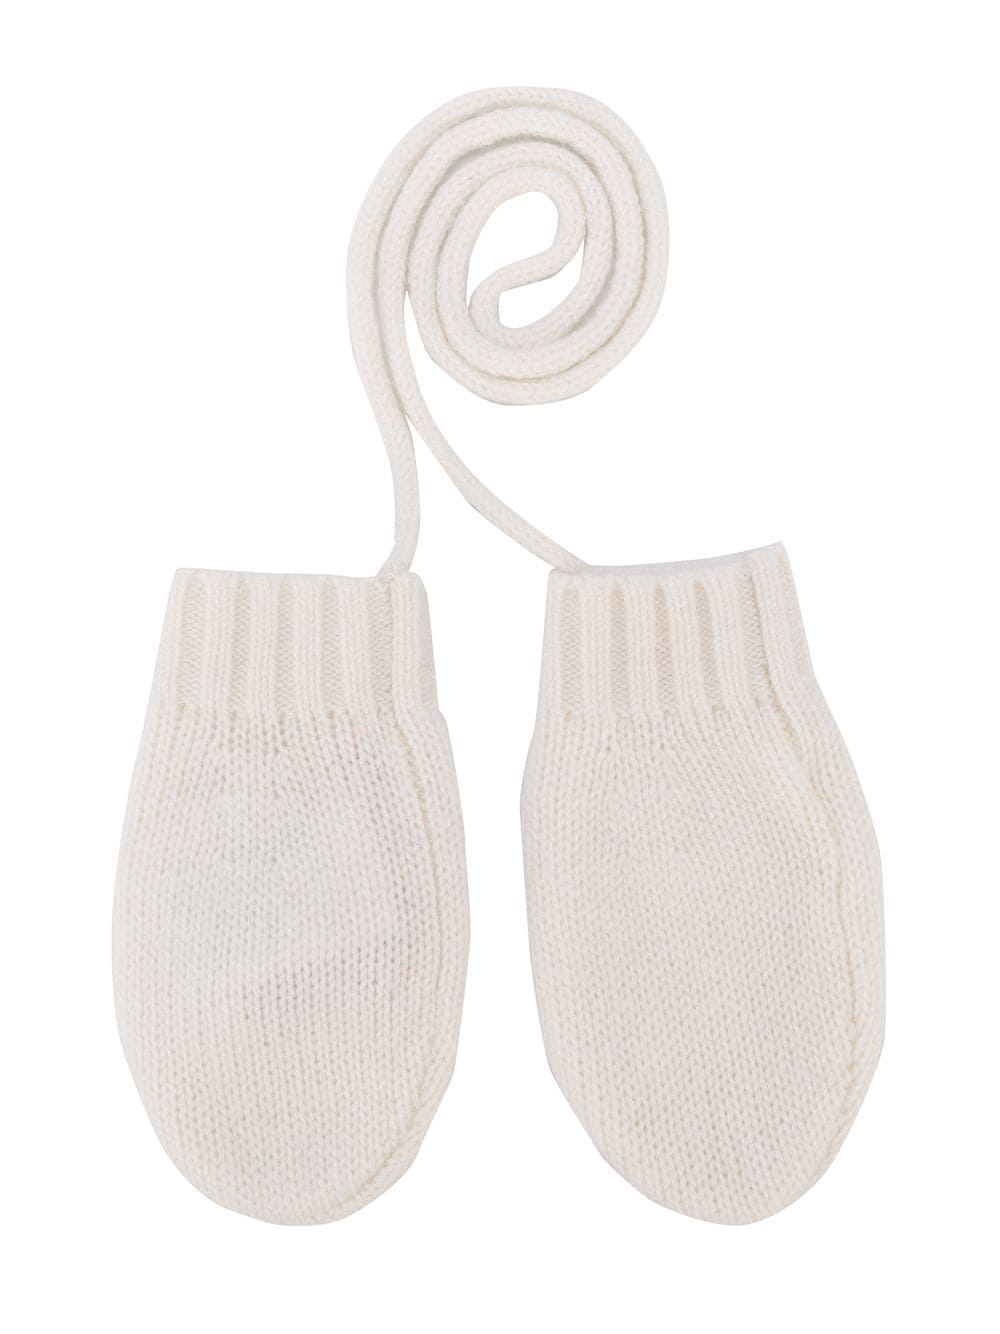 Bonpoint cashmere gloves - White von Bonpoint